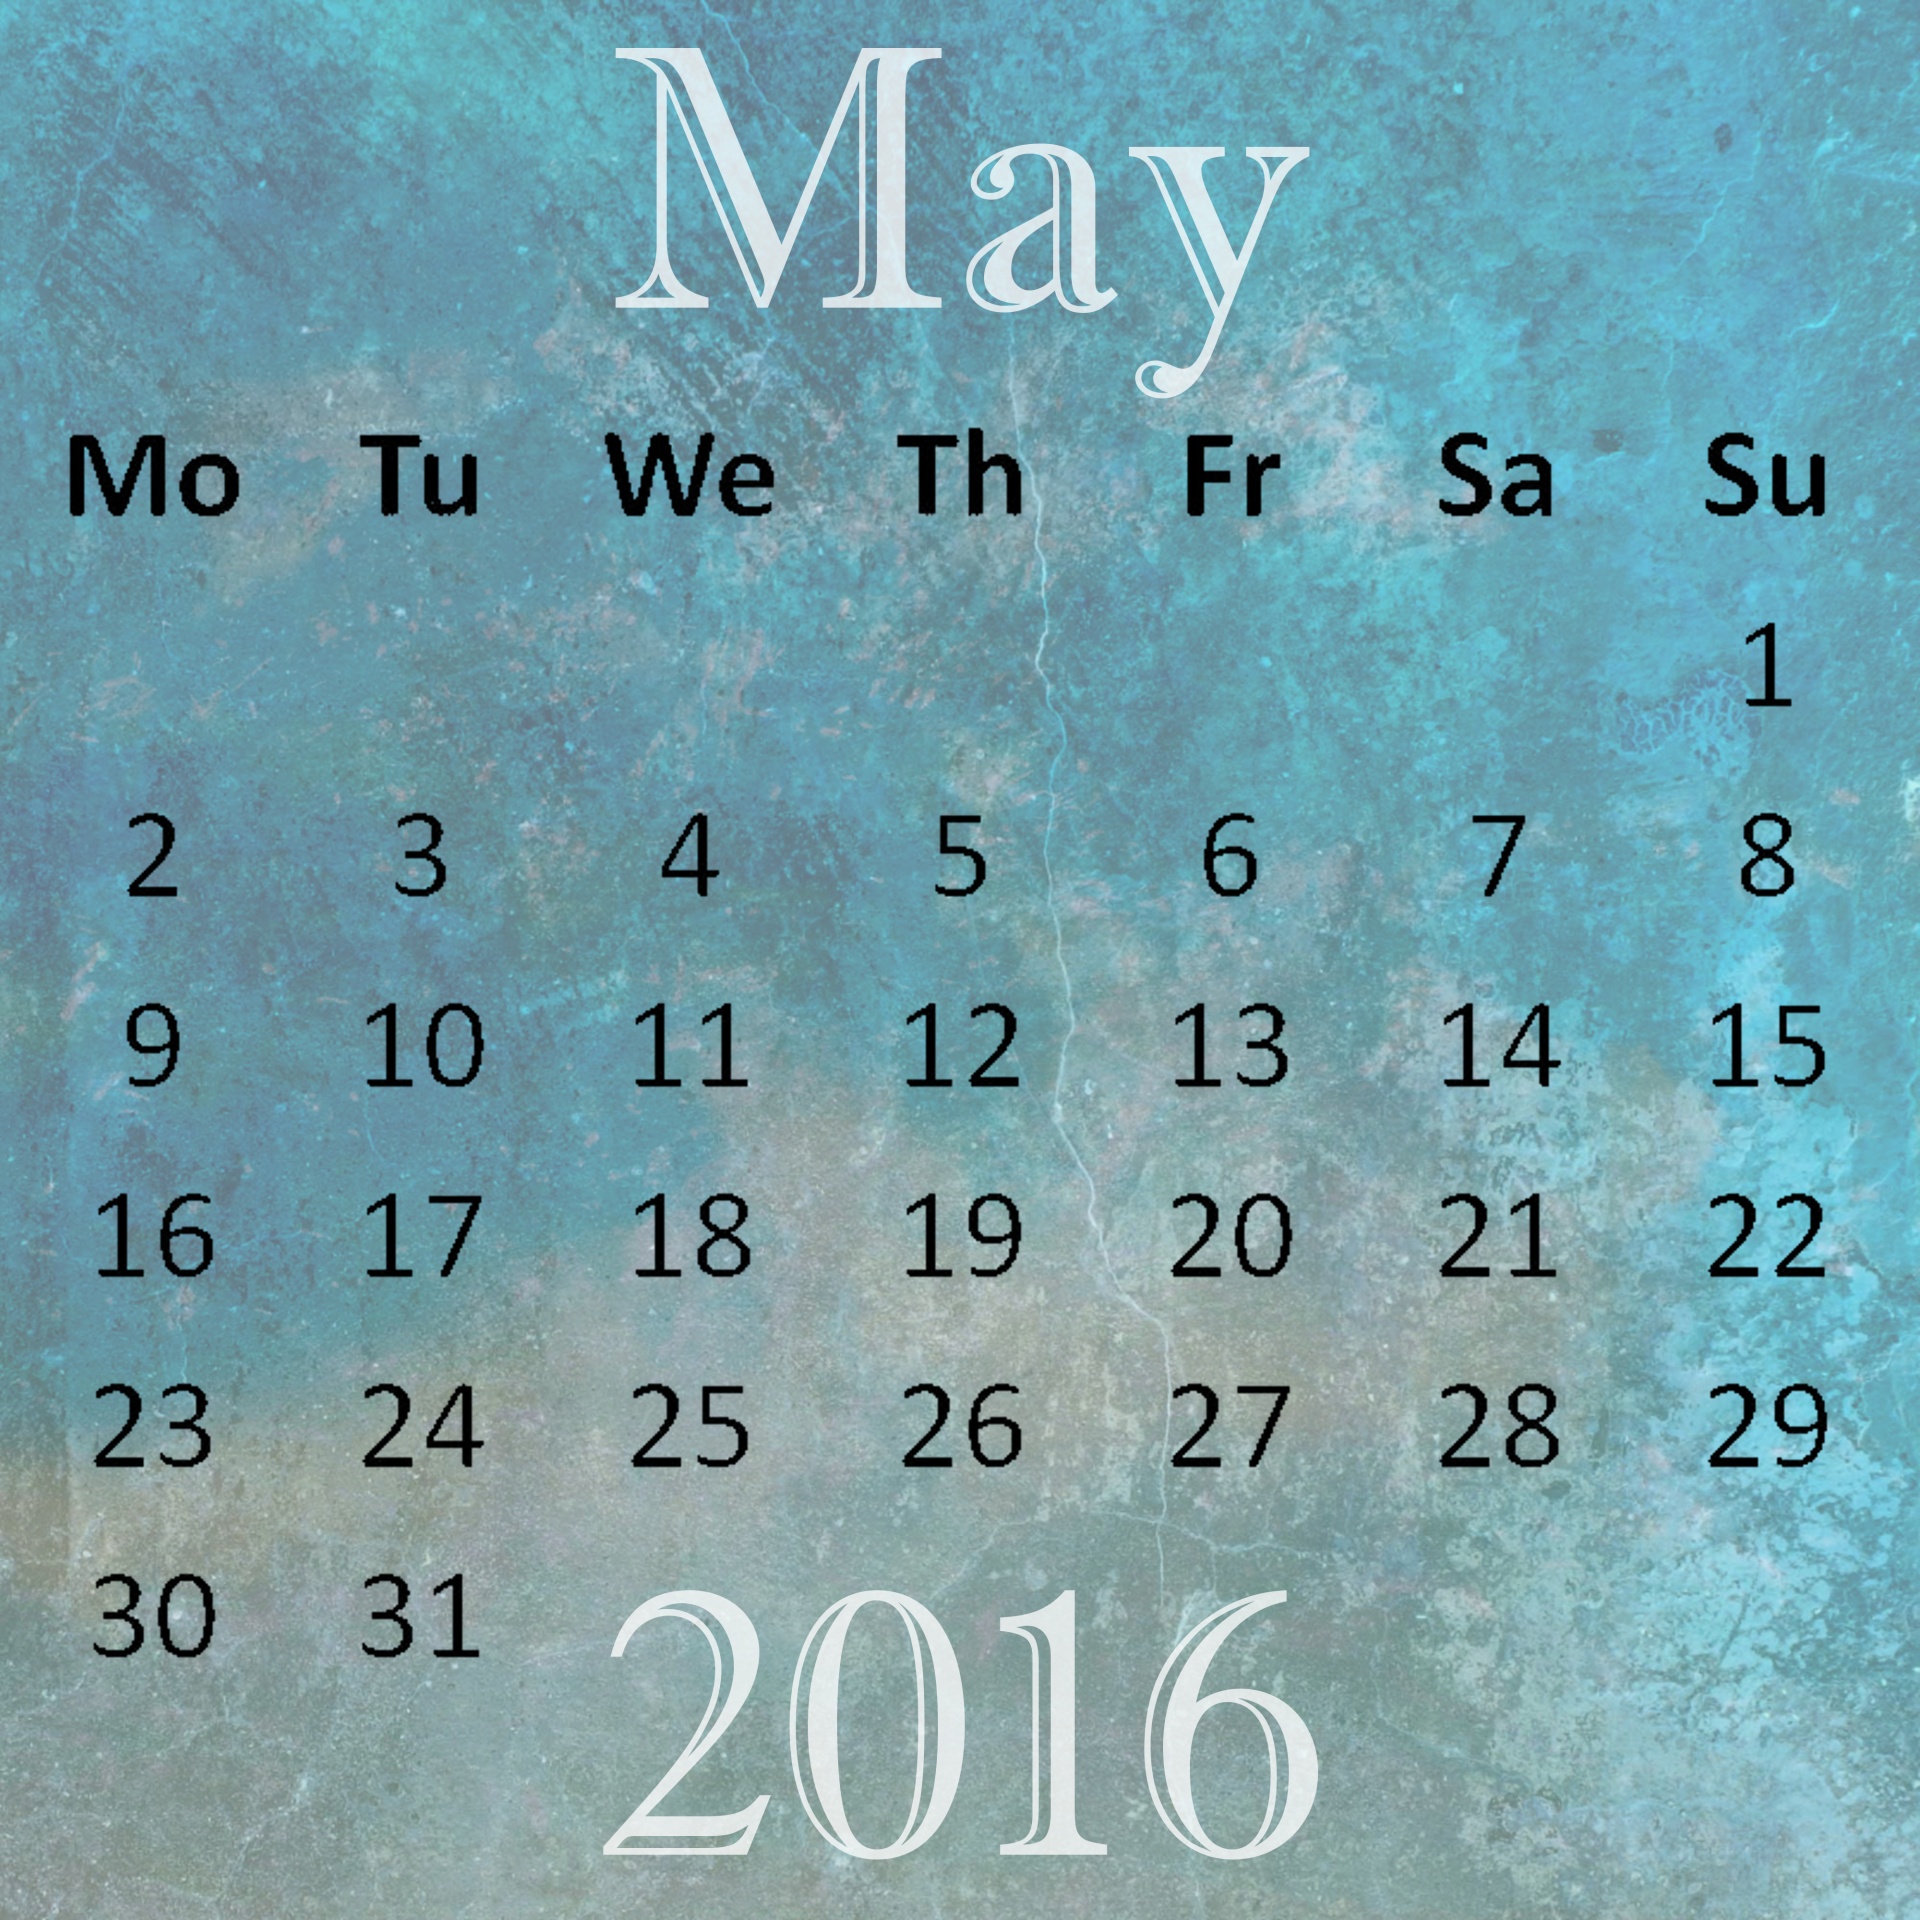 may 2016 calendar free photo